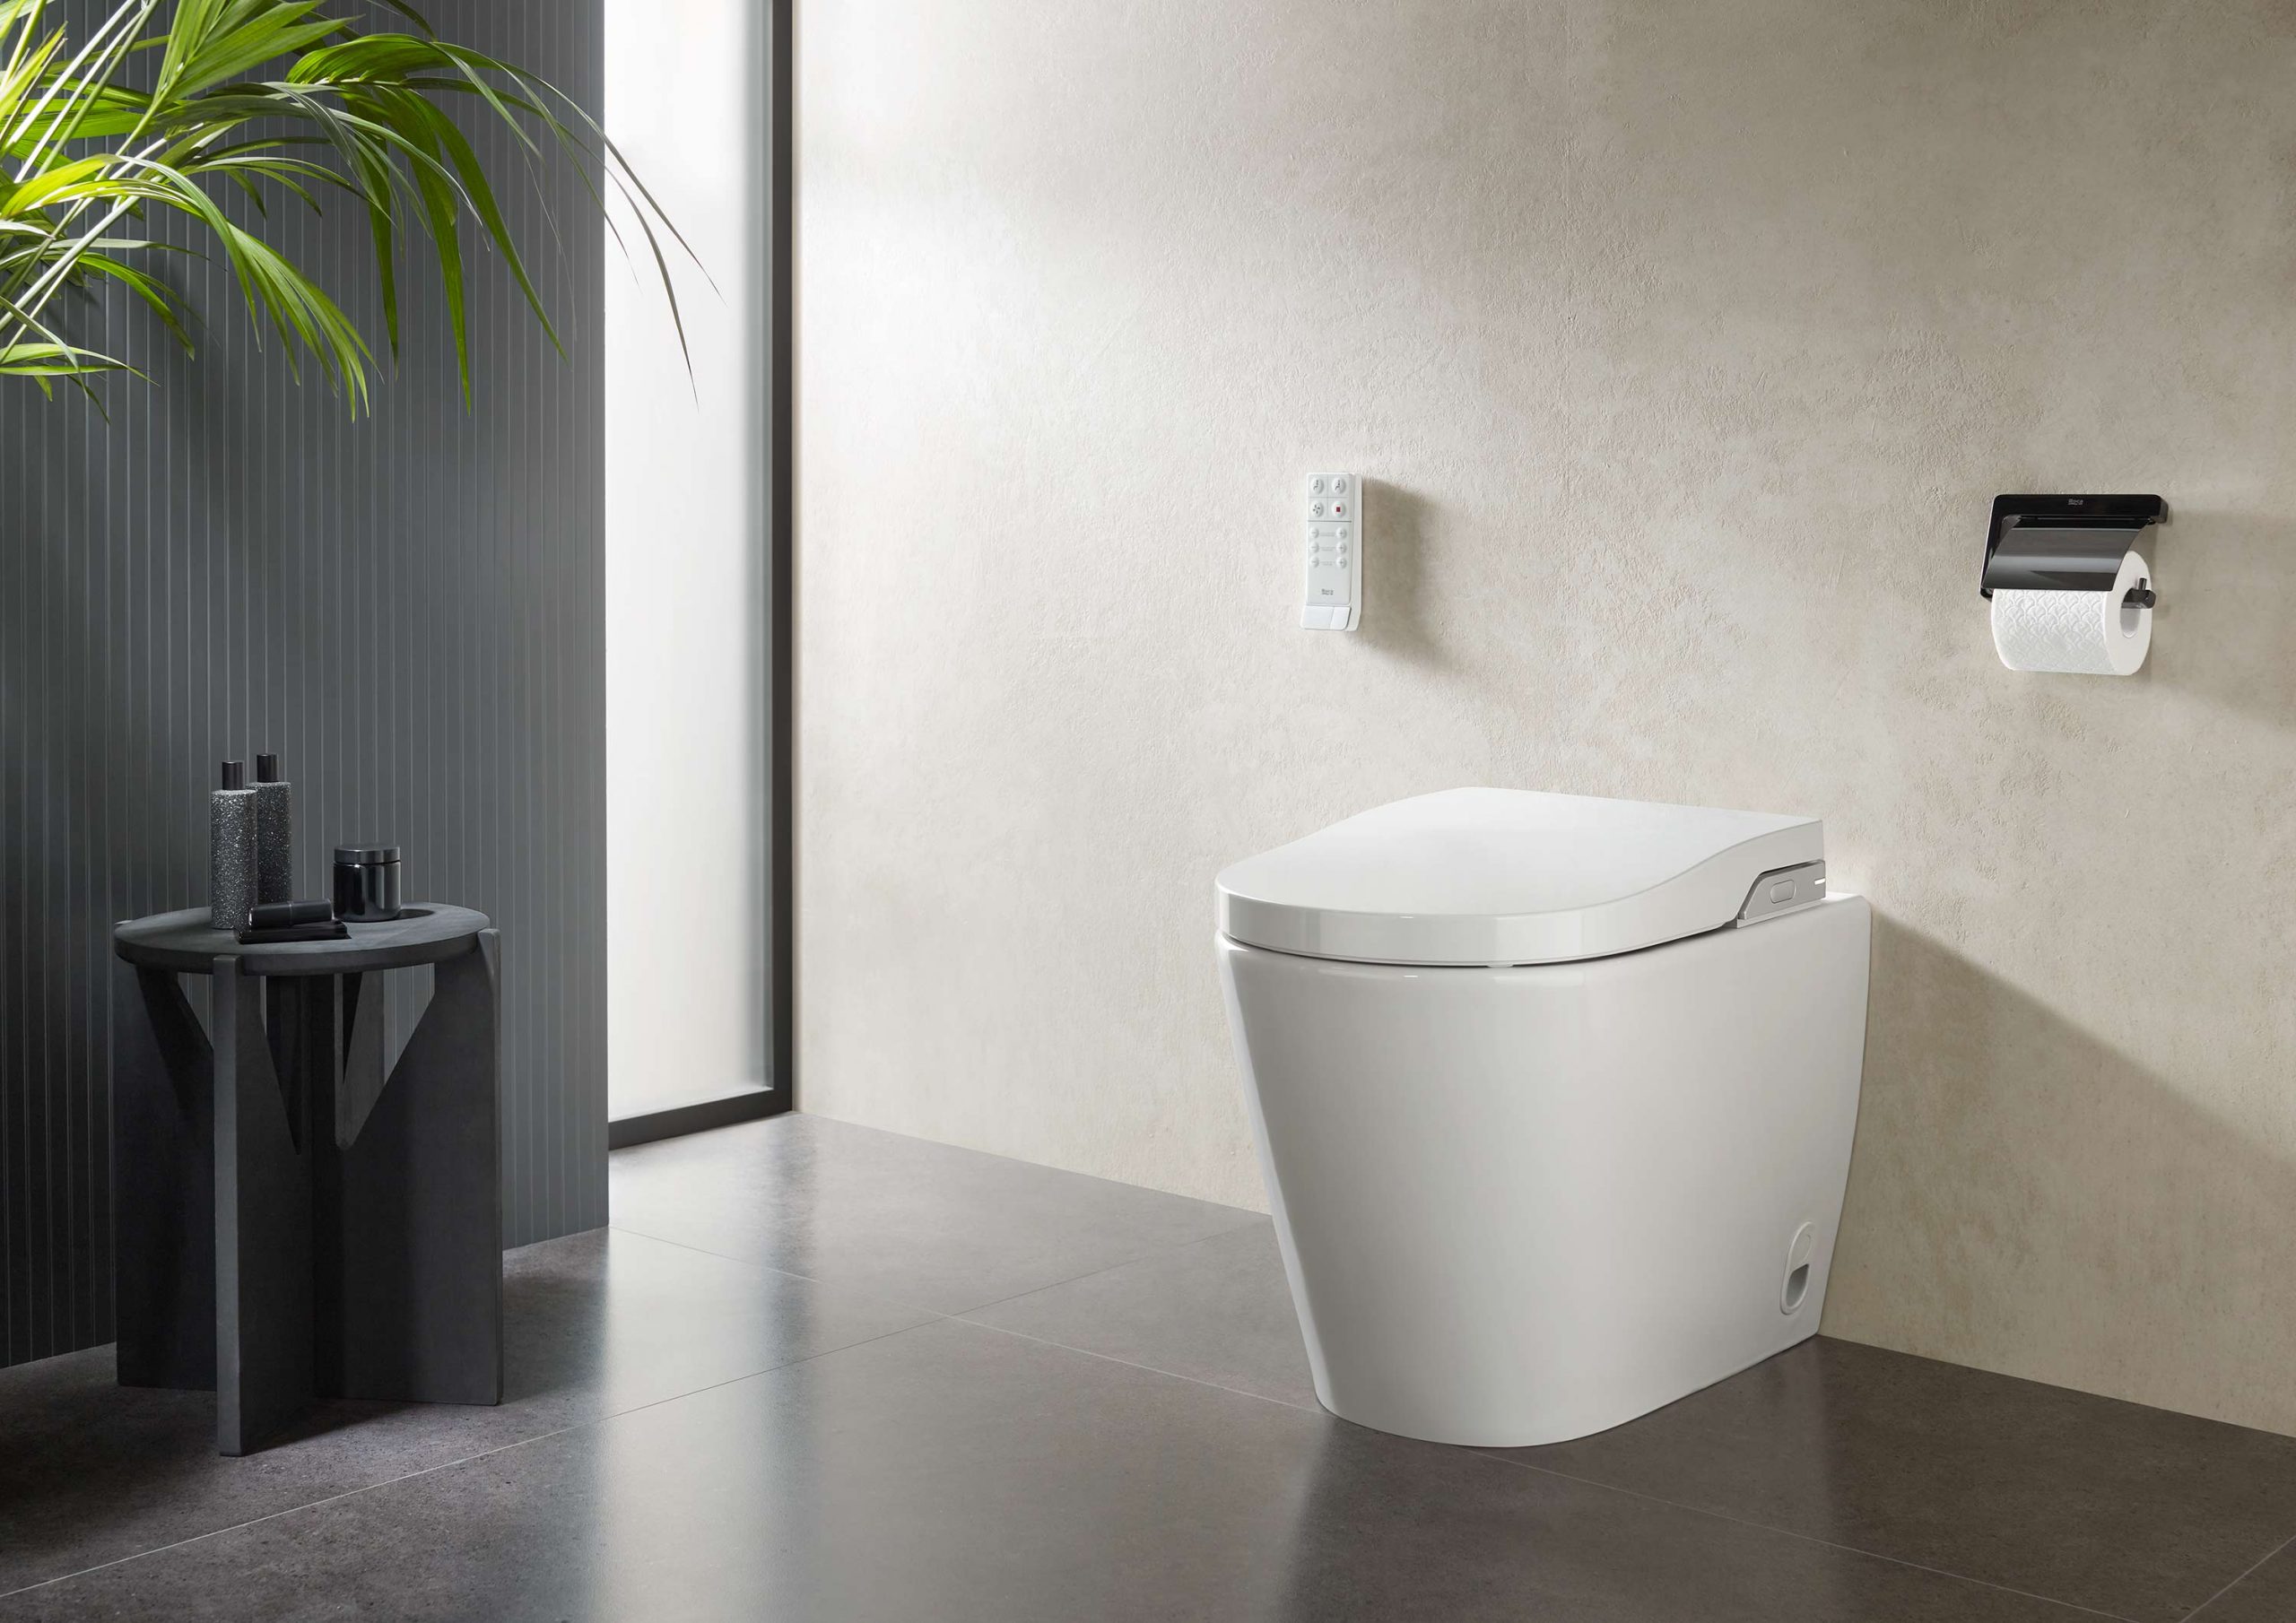 Rangement WC : idées pratiques pour toilettes - Côté Maison